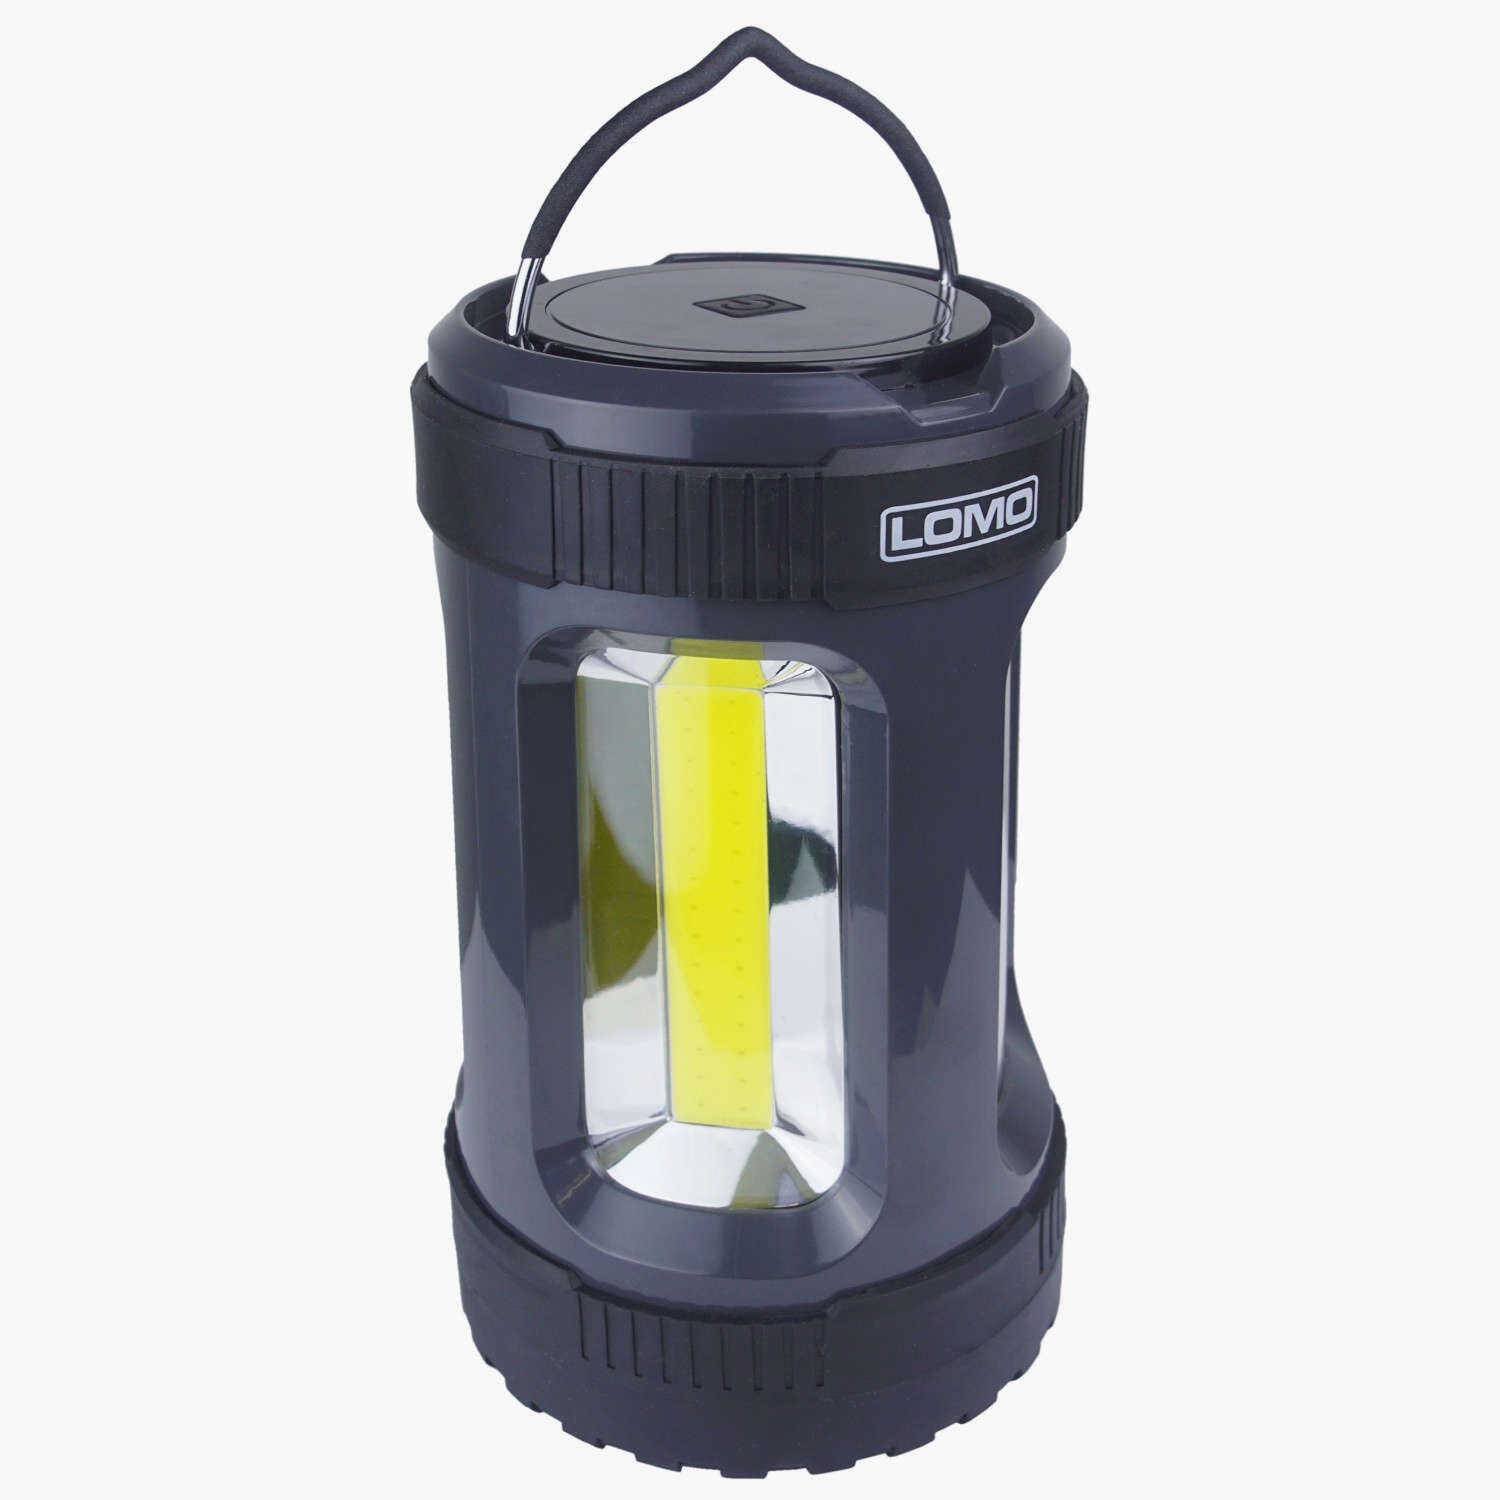 LOMO Lomo LED Camping Lantern - 1000 Lumens